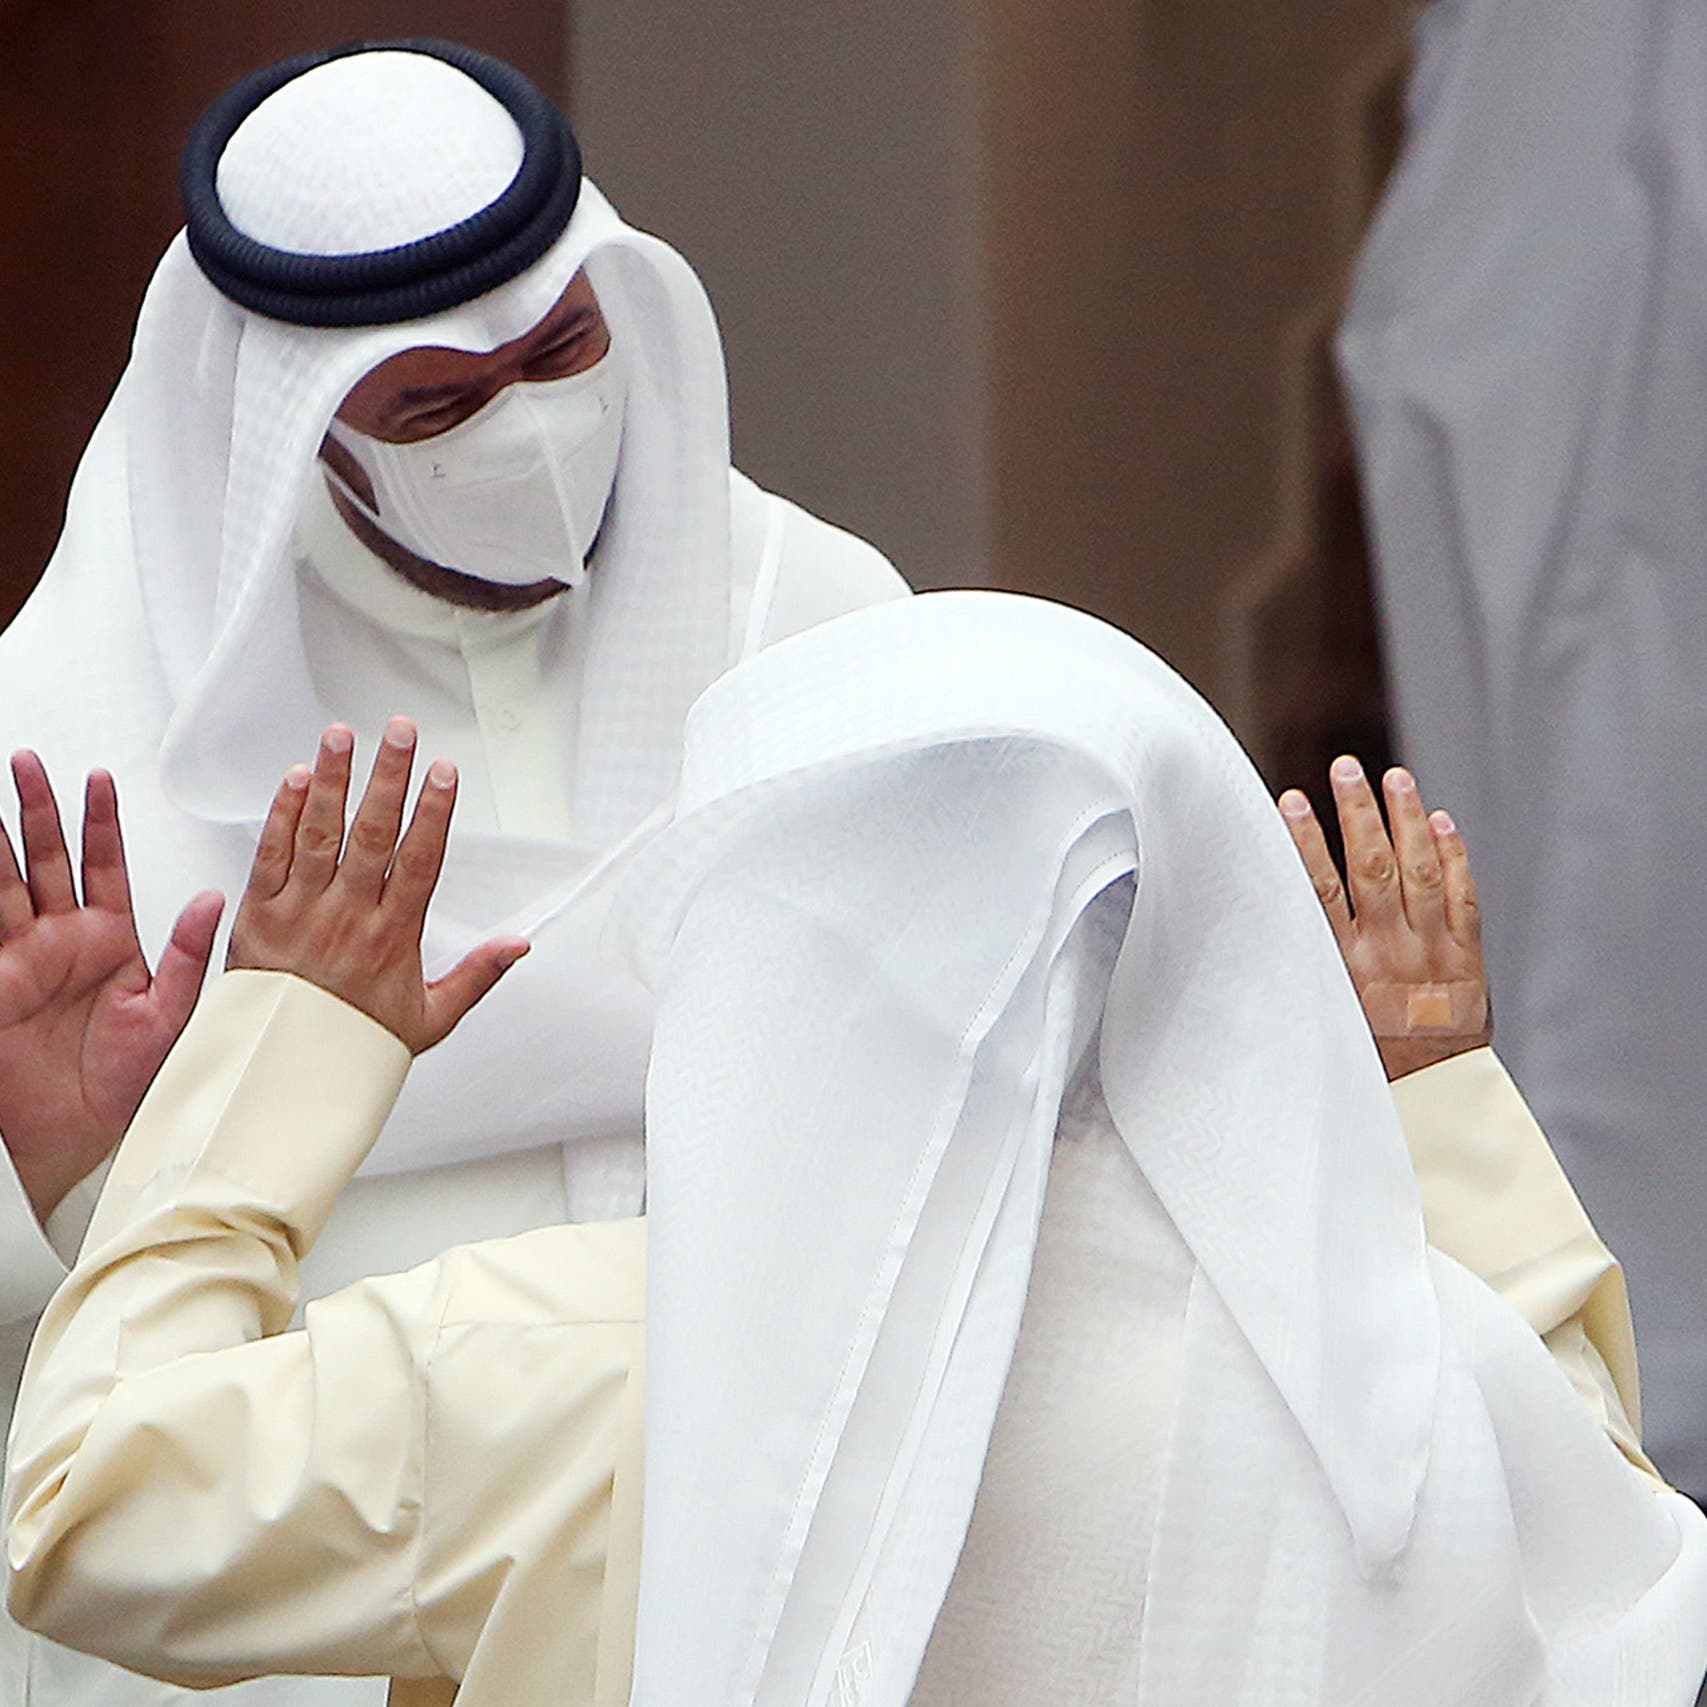 الكويت: عودة الدوام الرسمي المعتاد بالجهات الحكومية في هذا التوقيت